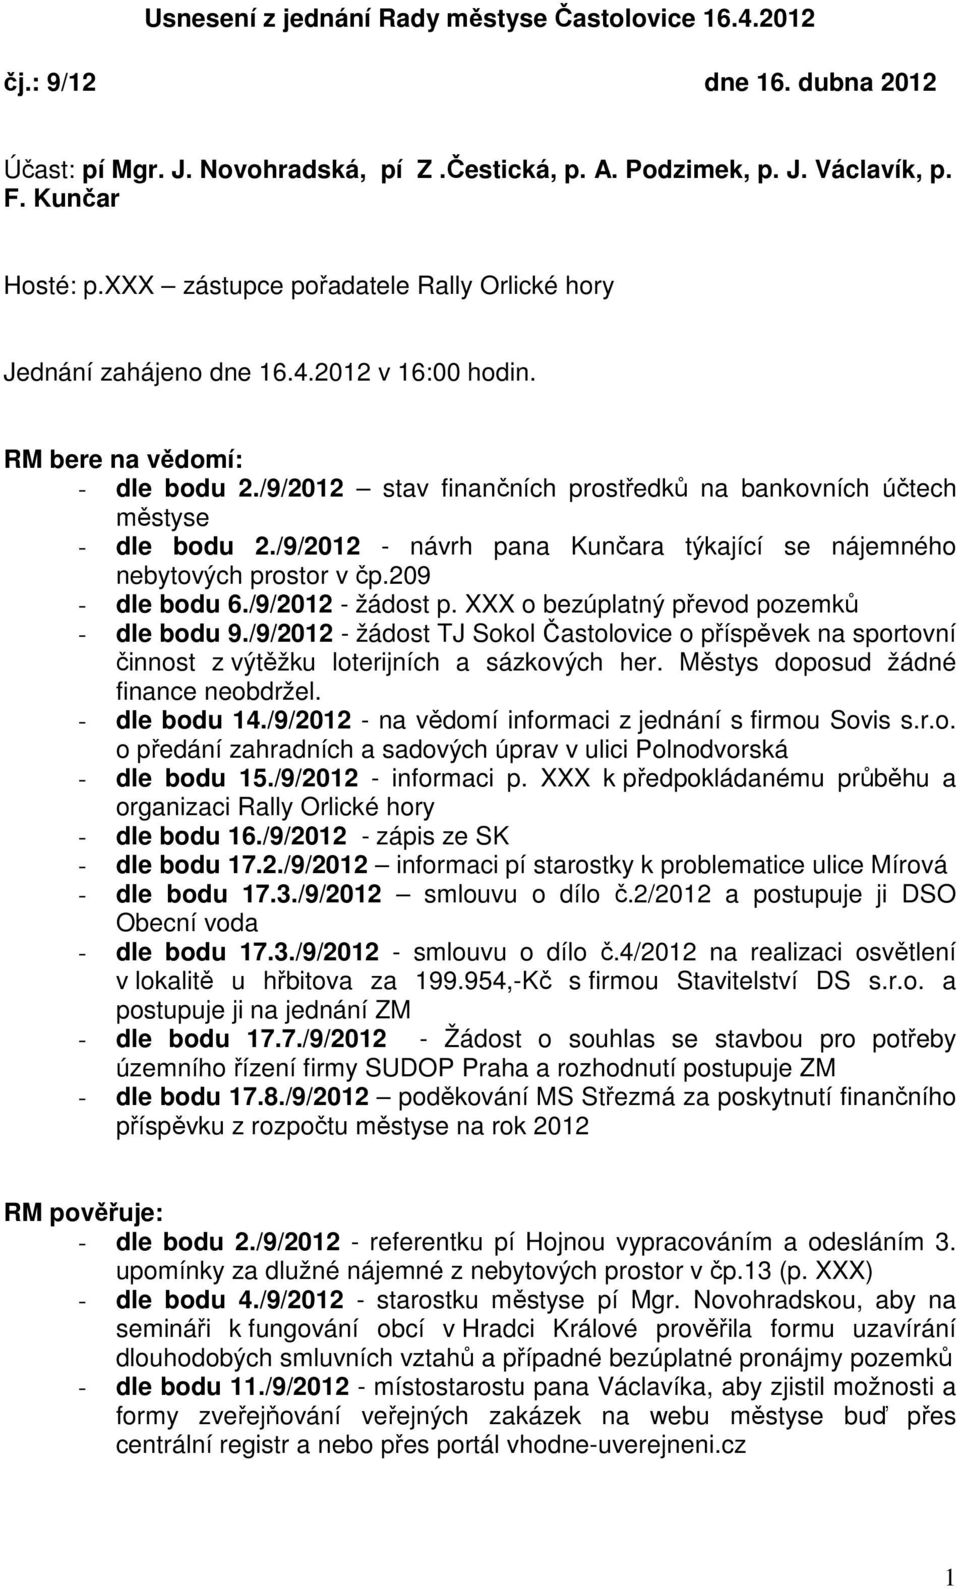 /9/2012 - návrh pana Kunčara týkající se nájemného nebytových prostor v čp.209 - dle bodu 6./9/2012 - žádost p. XXX o bezúplatný převod pozemků - dle bodu 9.